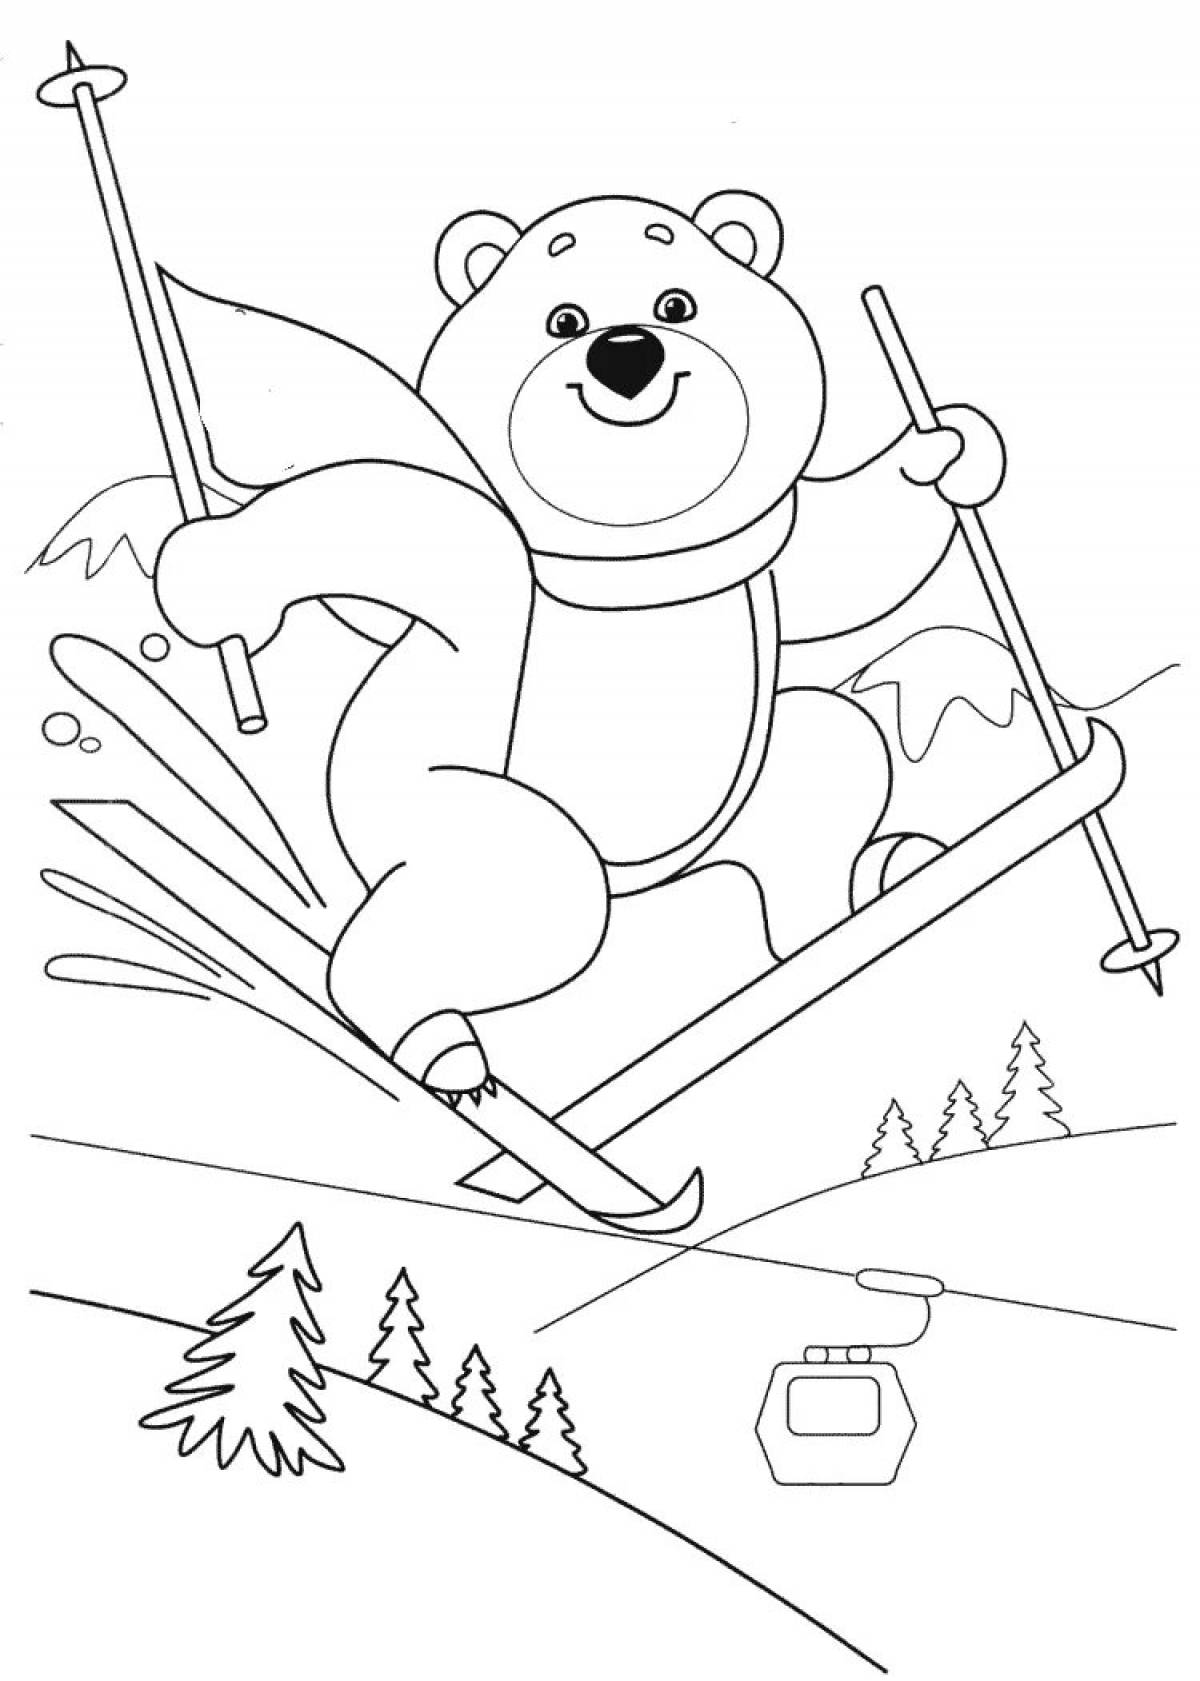 Teddy bear on skis #3